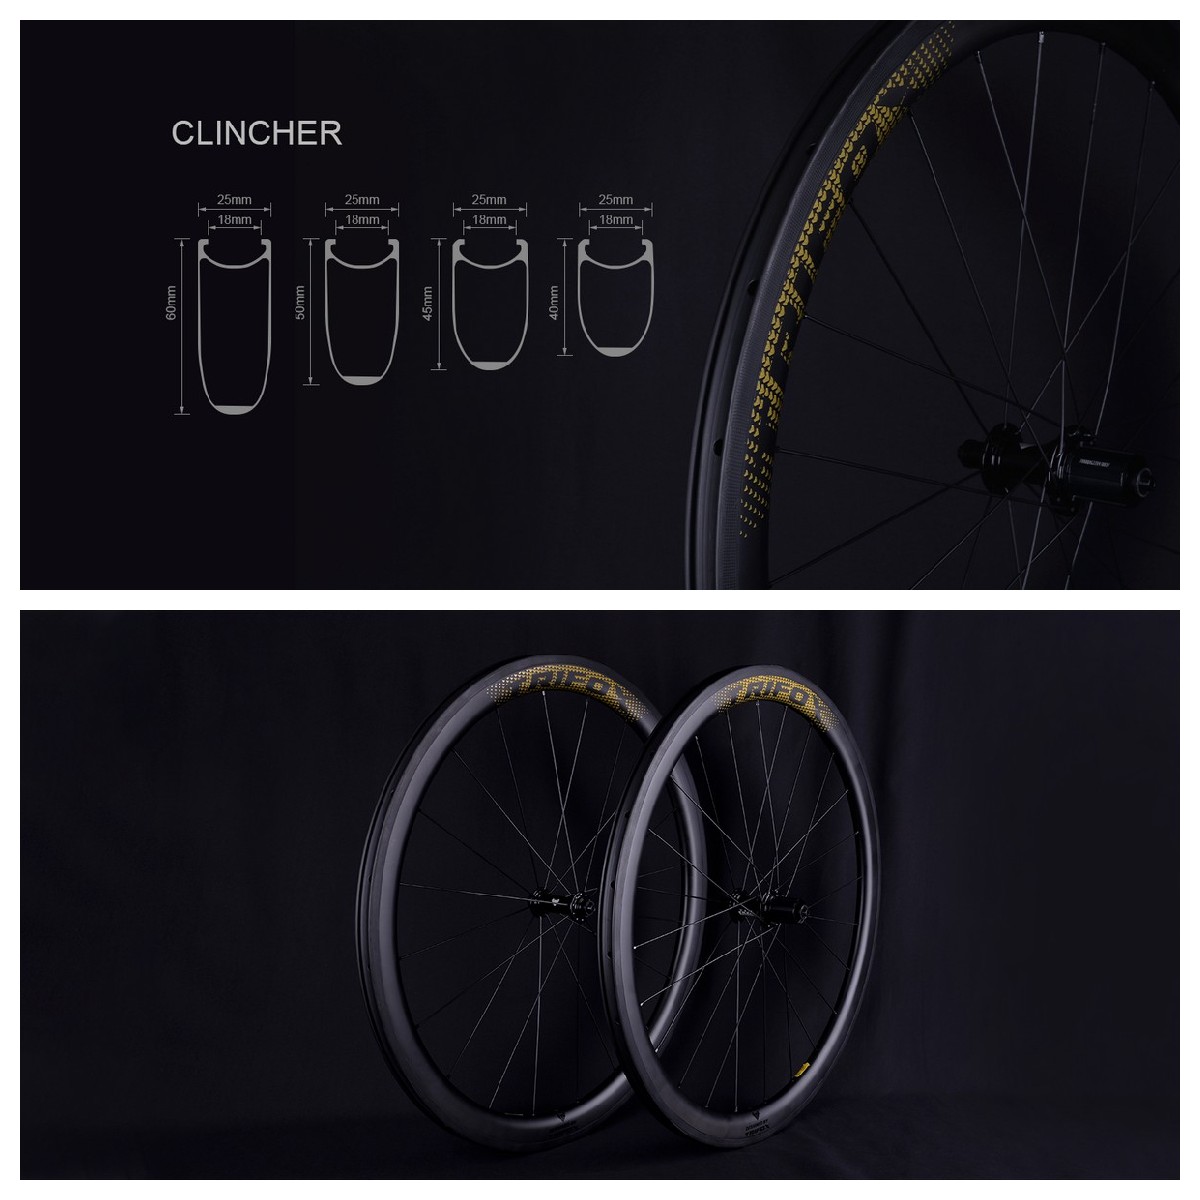 Carbon Fiber Road Bike Frameset X8QR and Road Wheelset WT18 Details 4